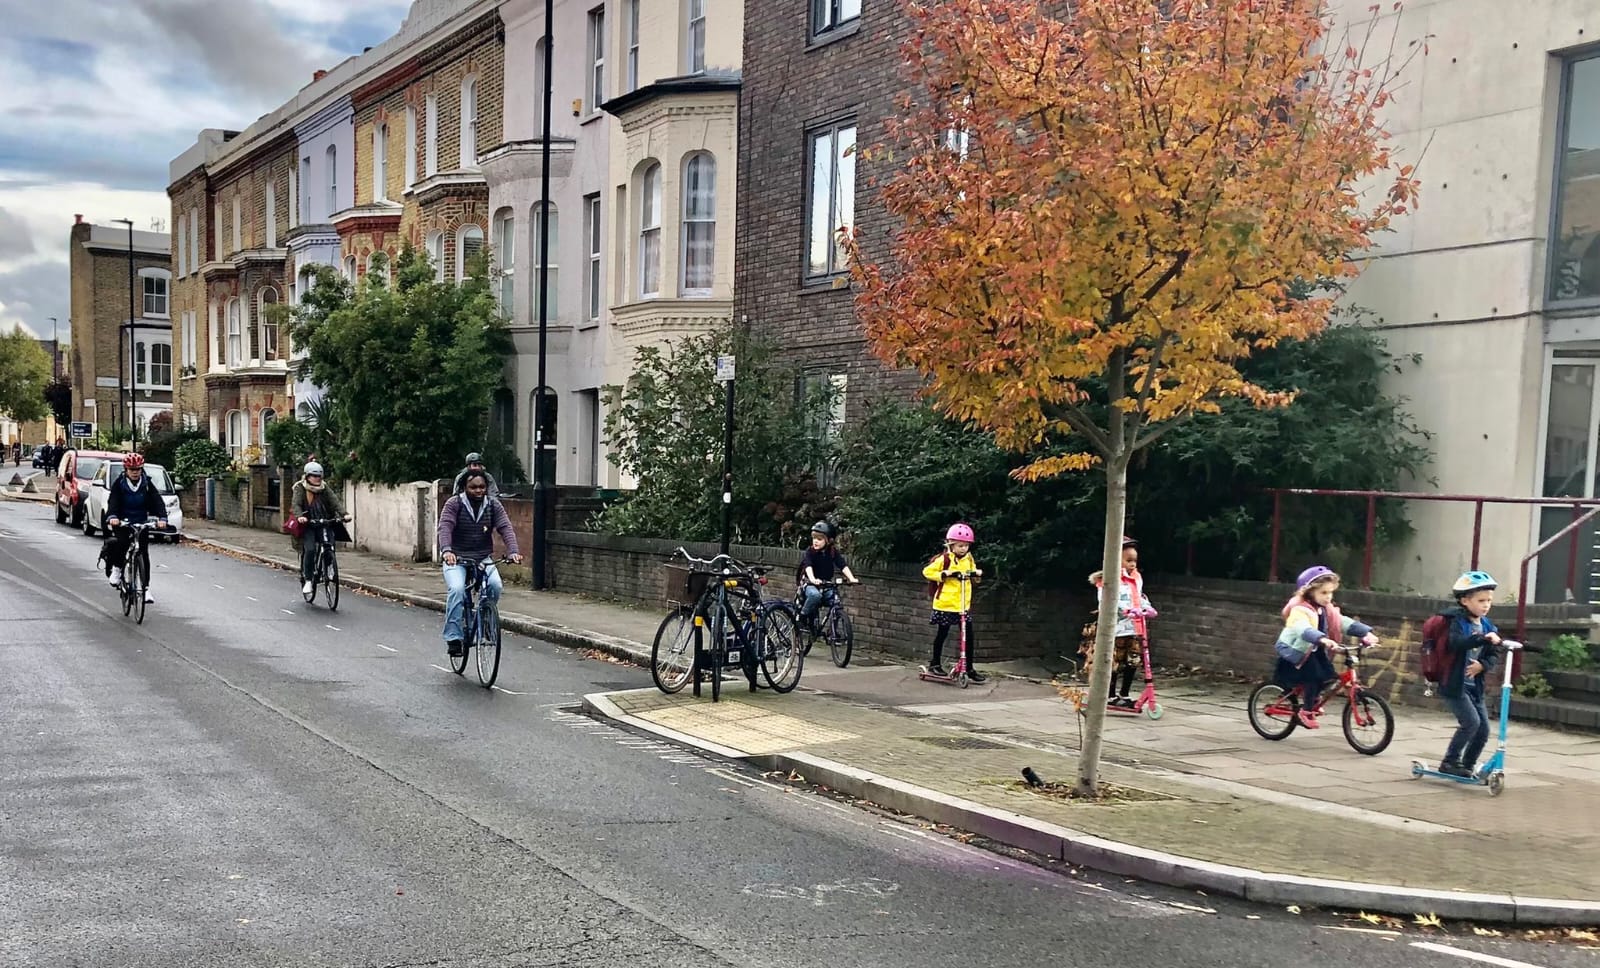 Cyclists in Lambeth